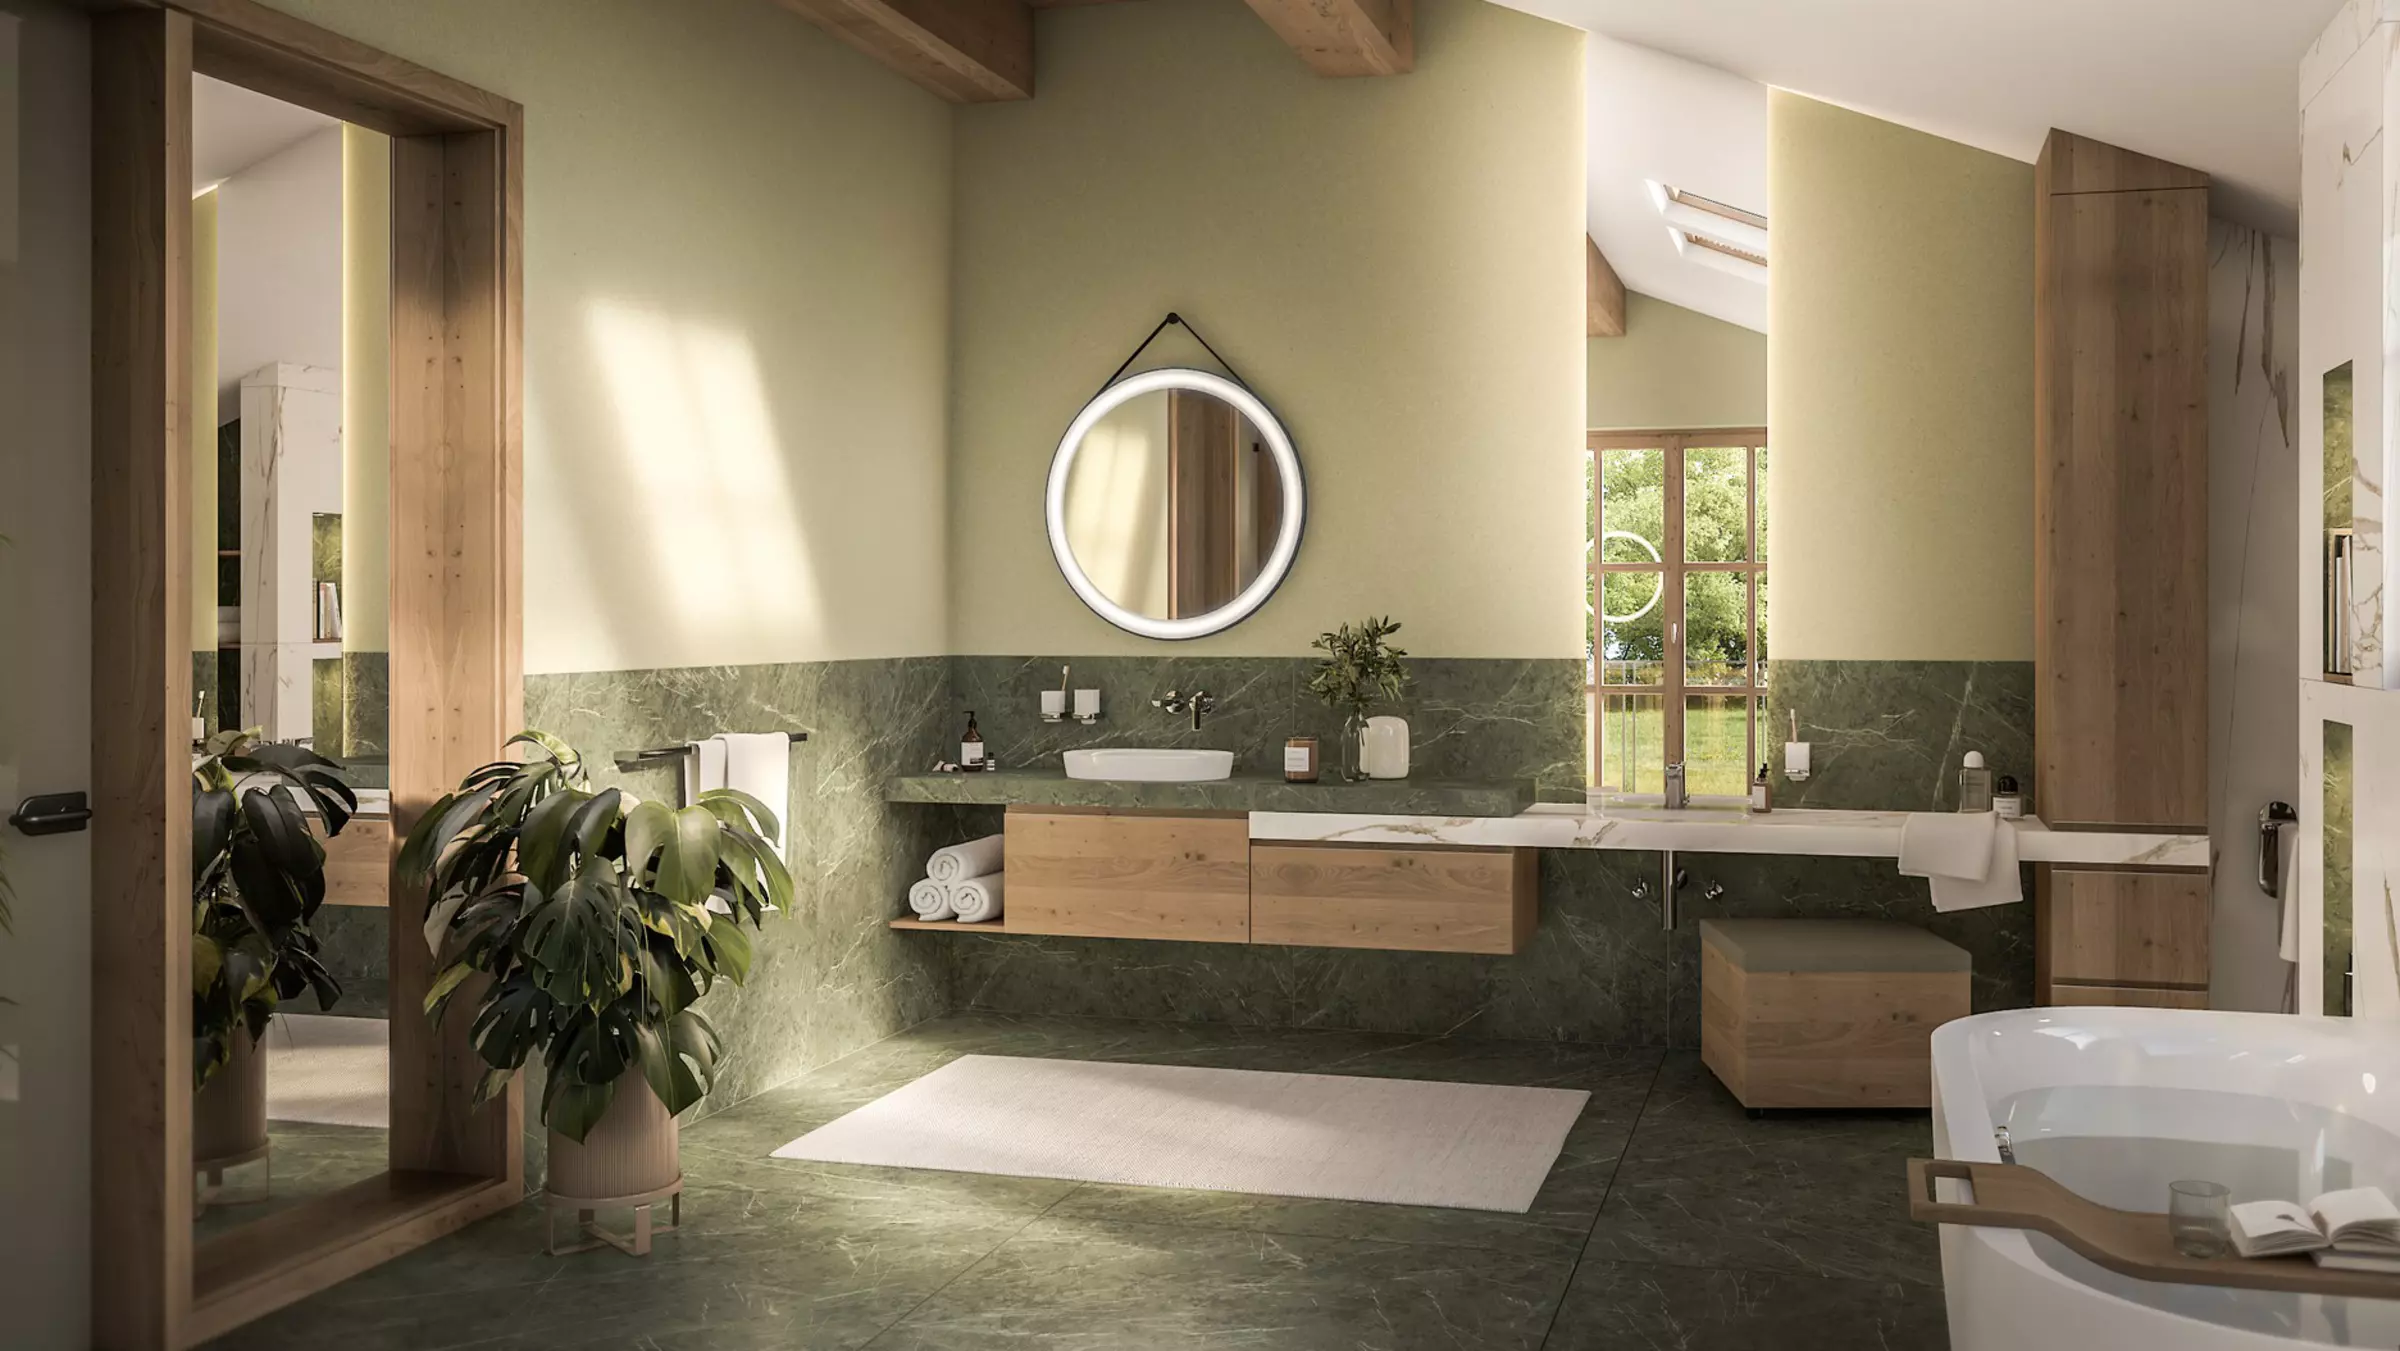 Bad in Grüntönen mit Holzmöbeln, rundem Spiegel und Waschtisch.